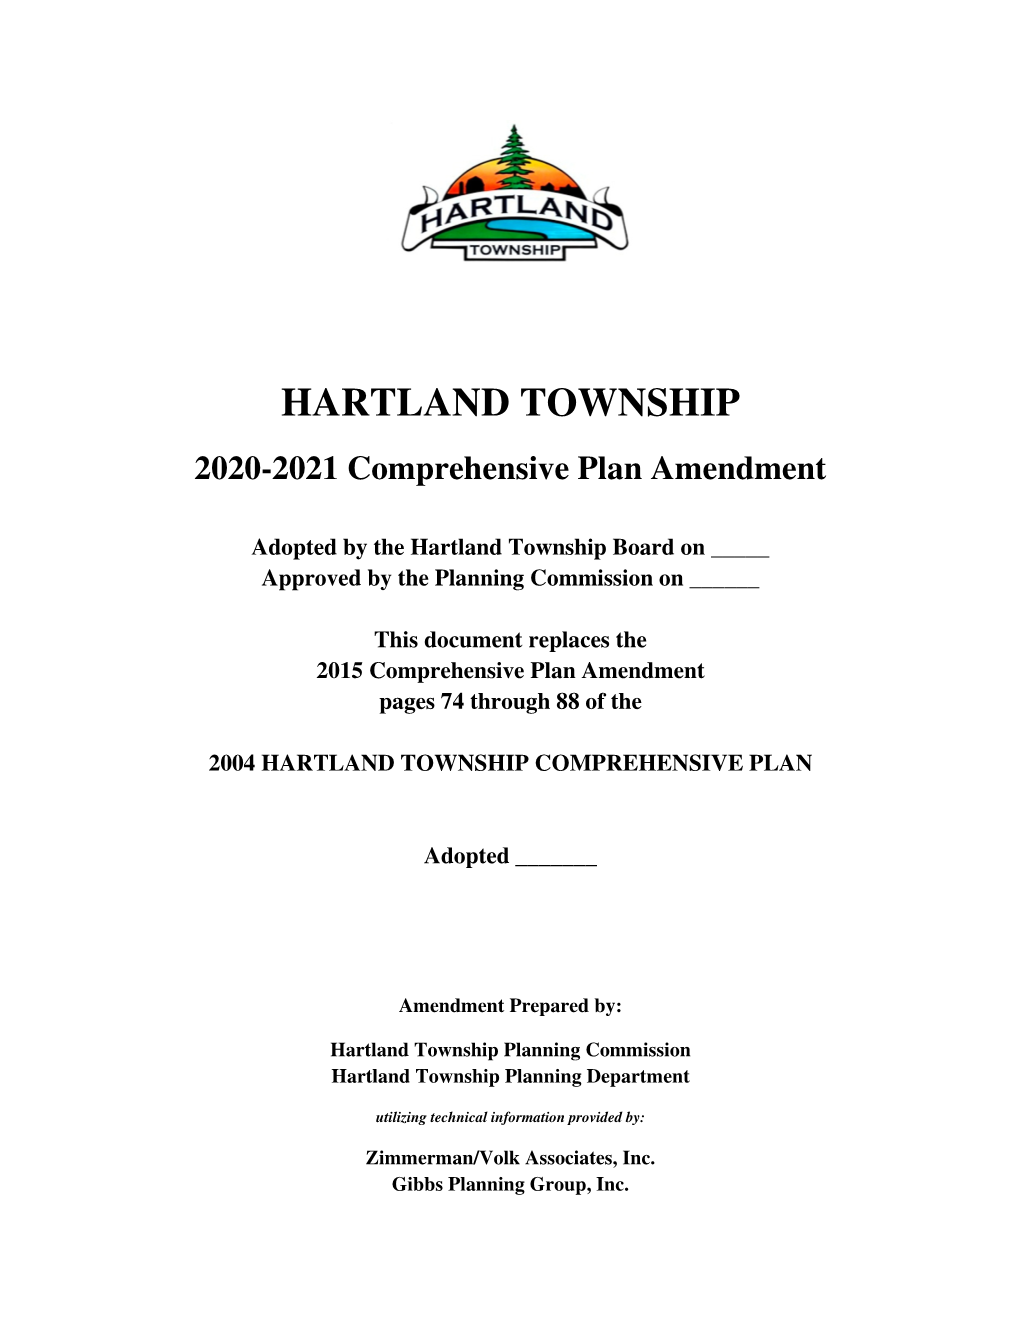 2020-2021 Comprehensive Draft Amendment